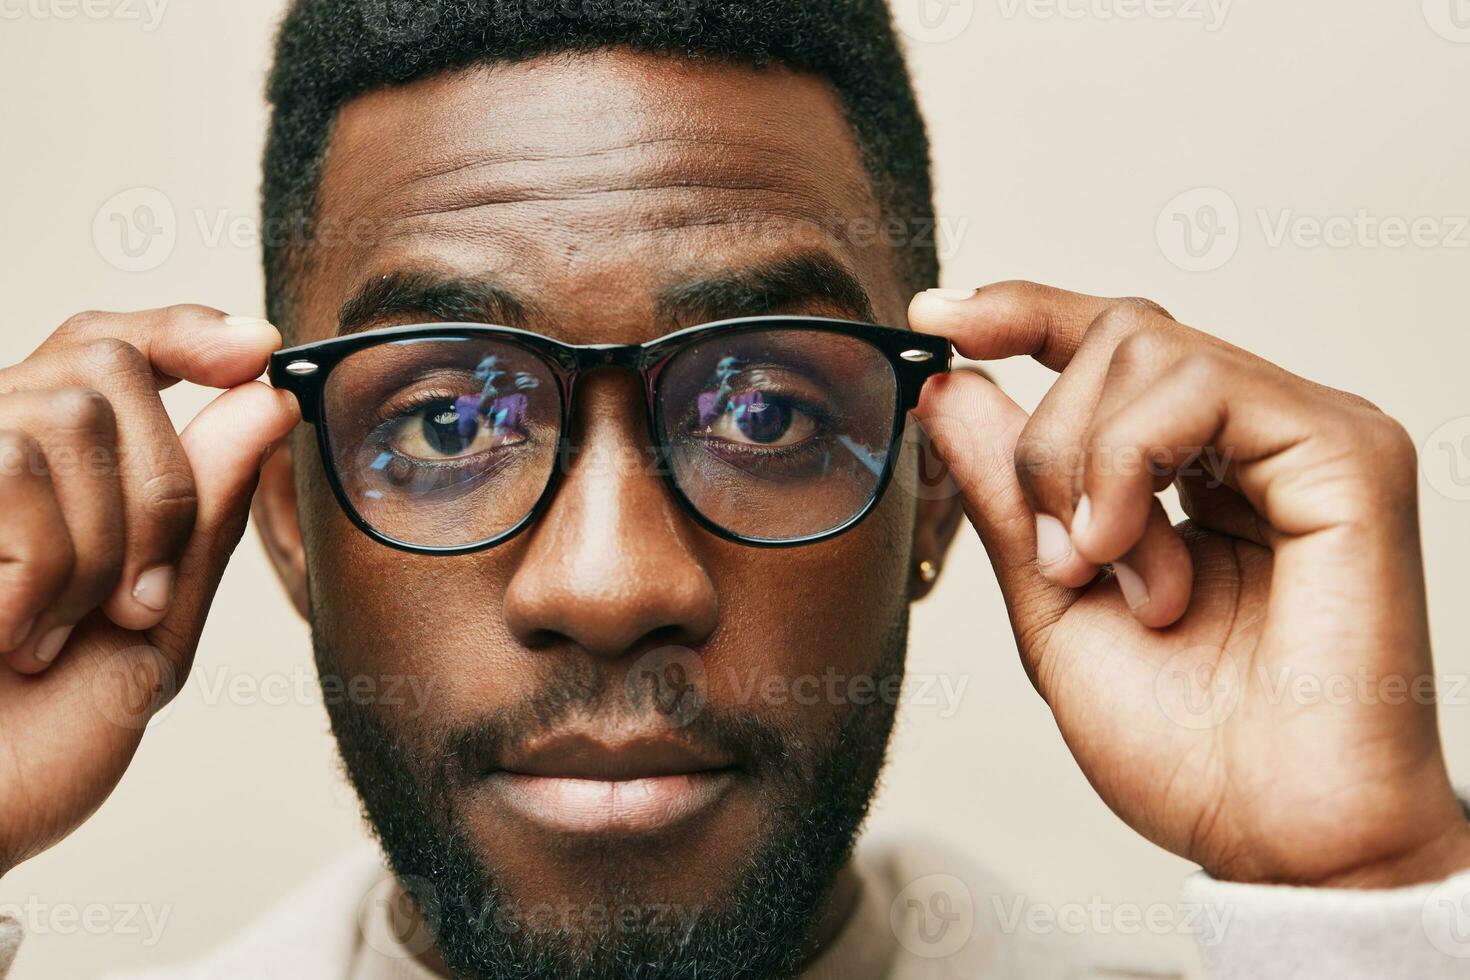 américain homme élégant veste des lunettes africain beige noir modèle style mode portrait photo